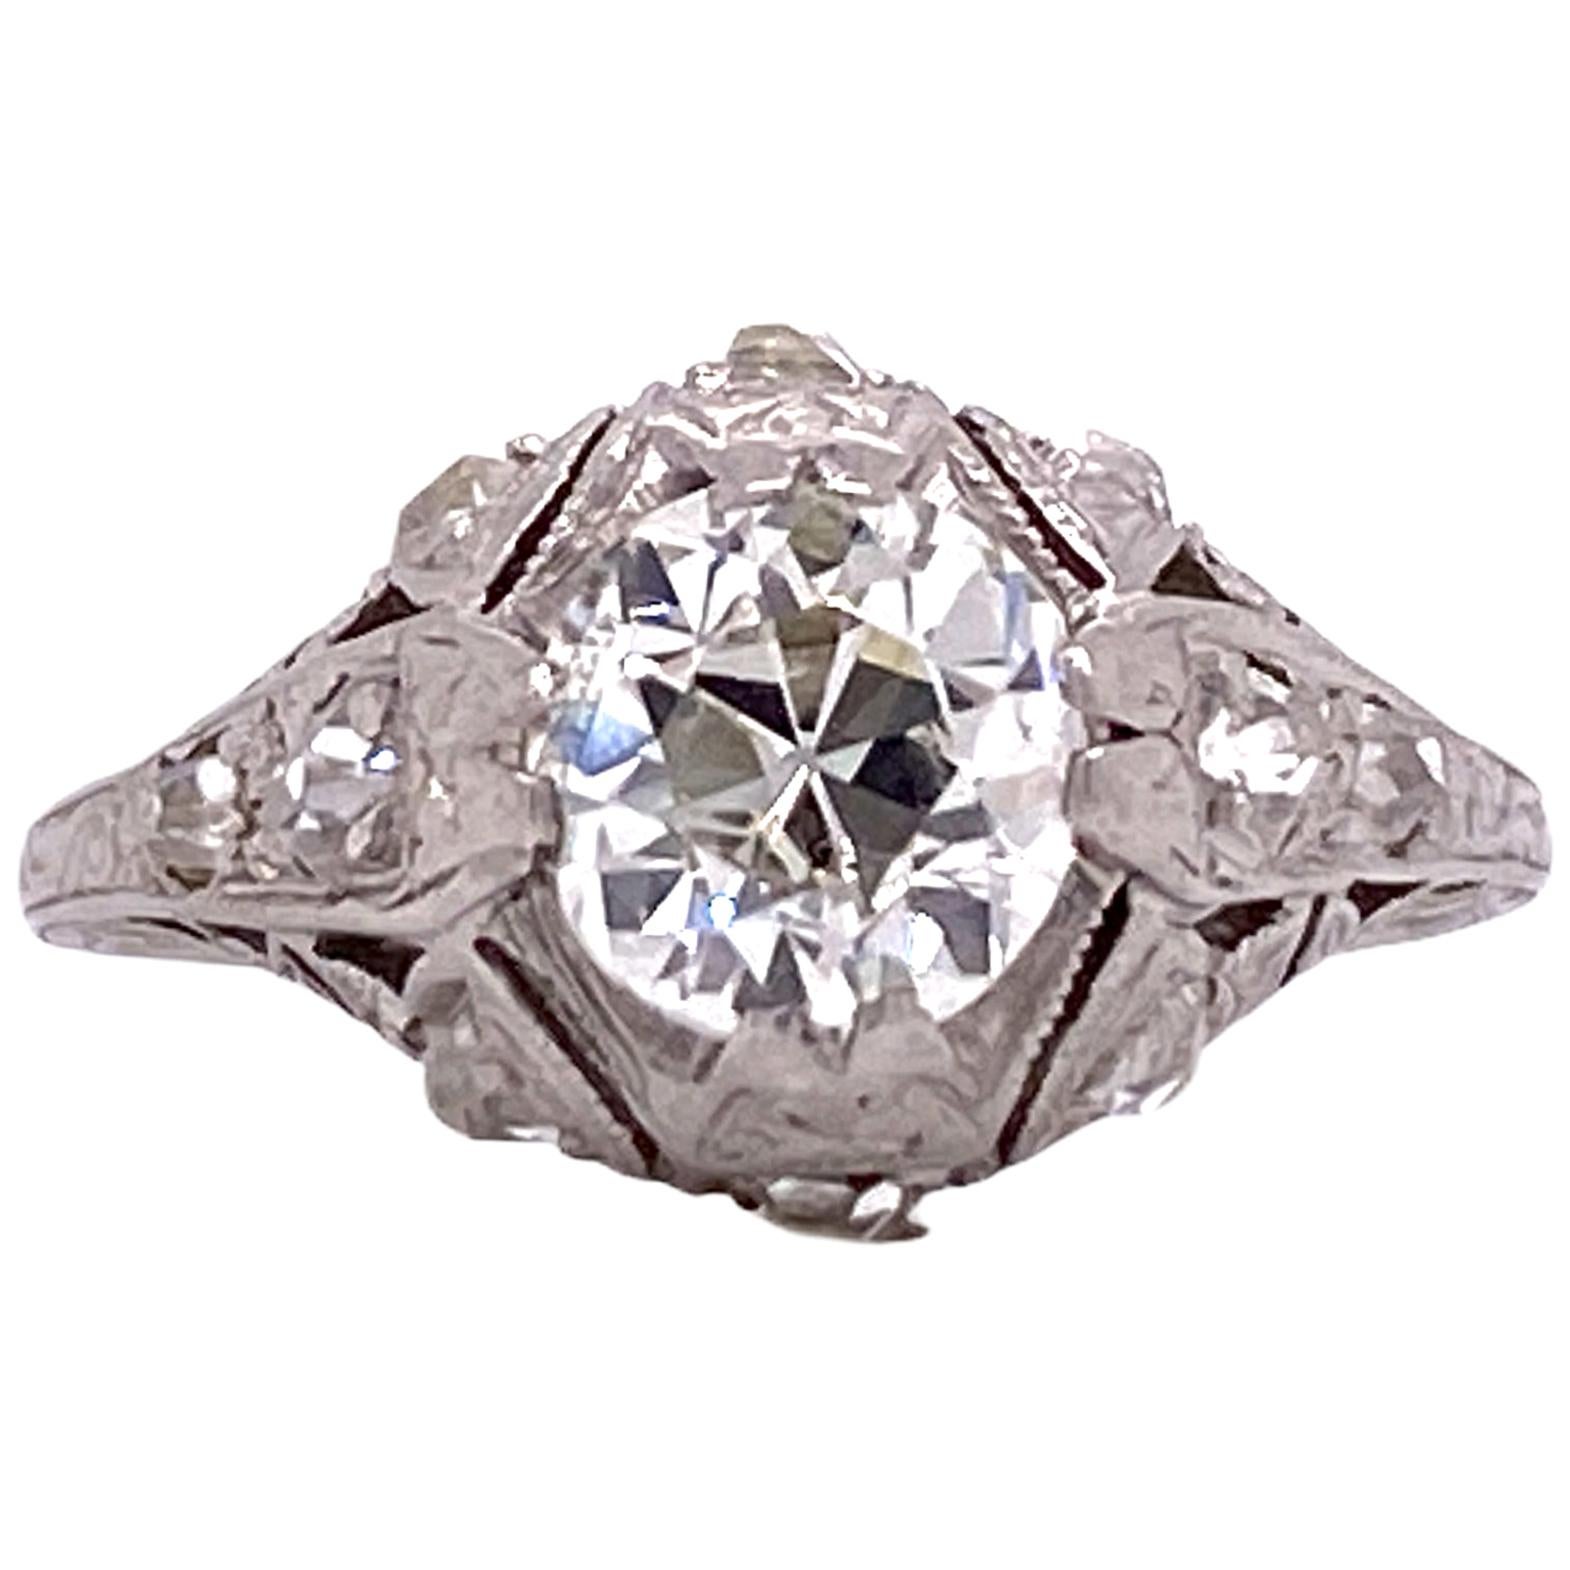 Art Deco Diamond Platinum Filigree Engagement Ring